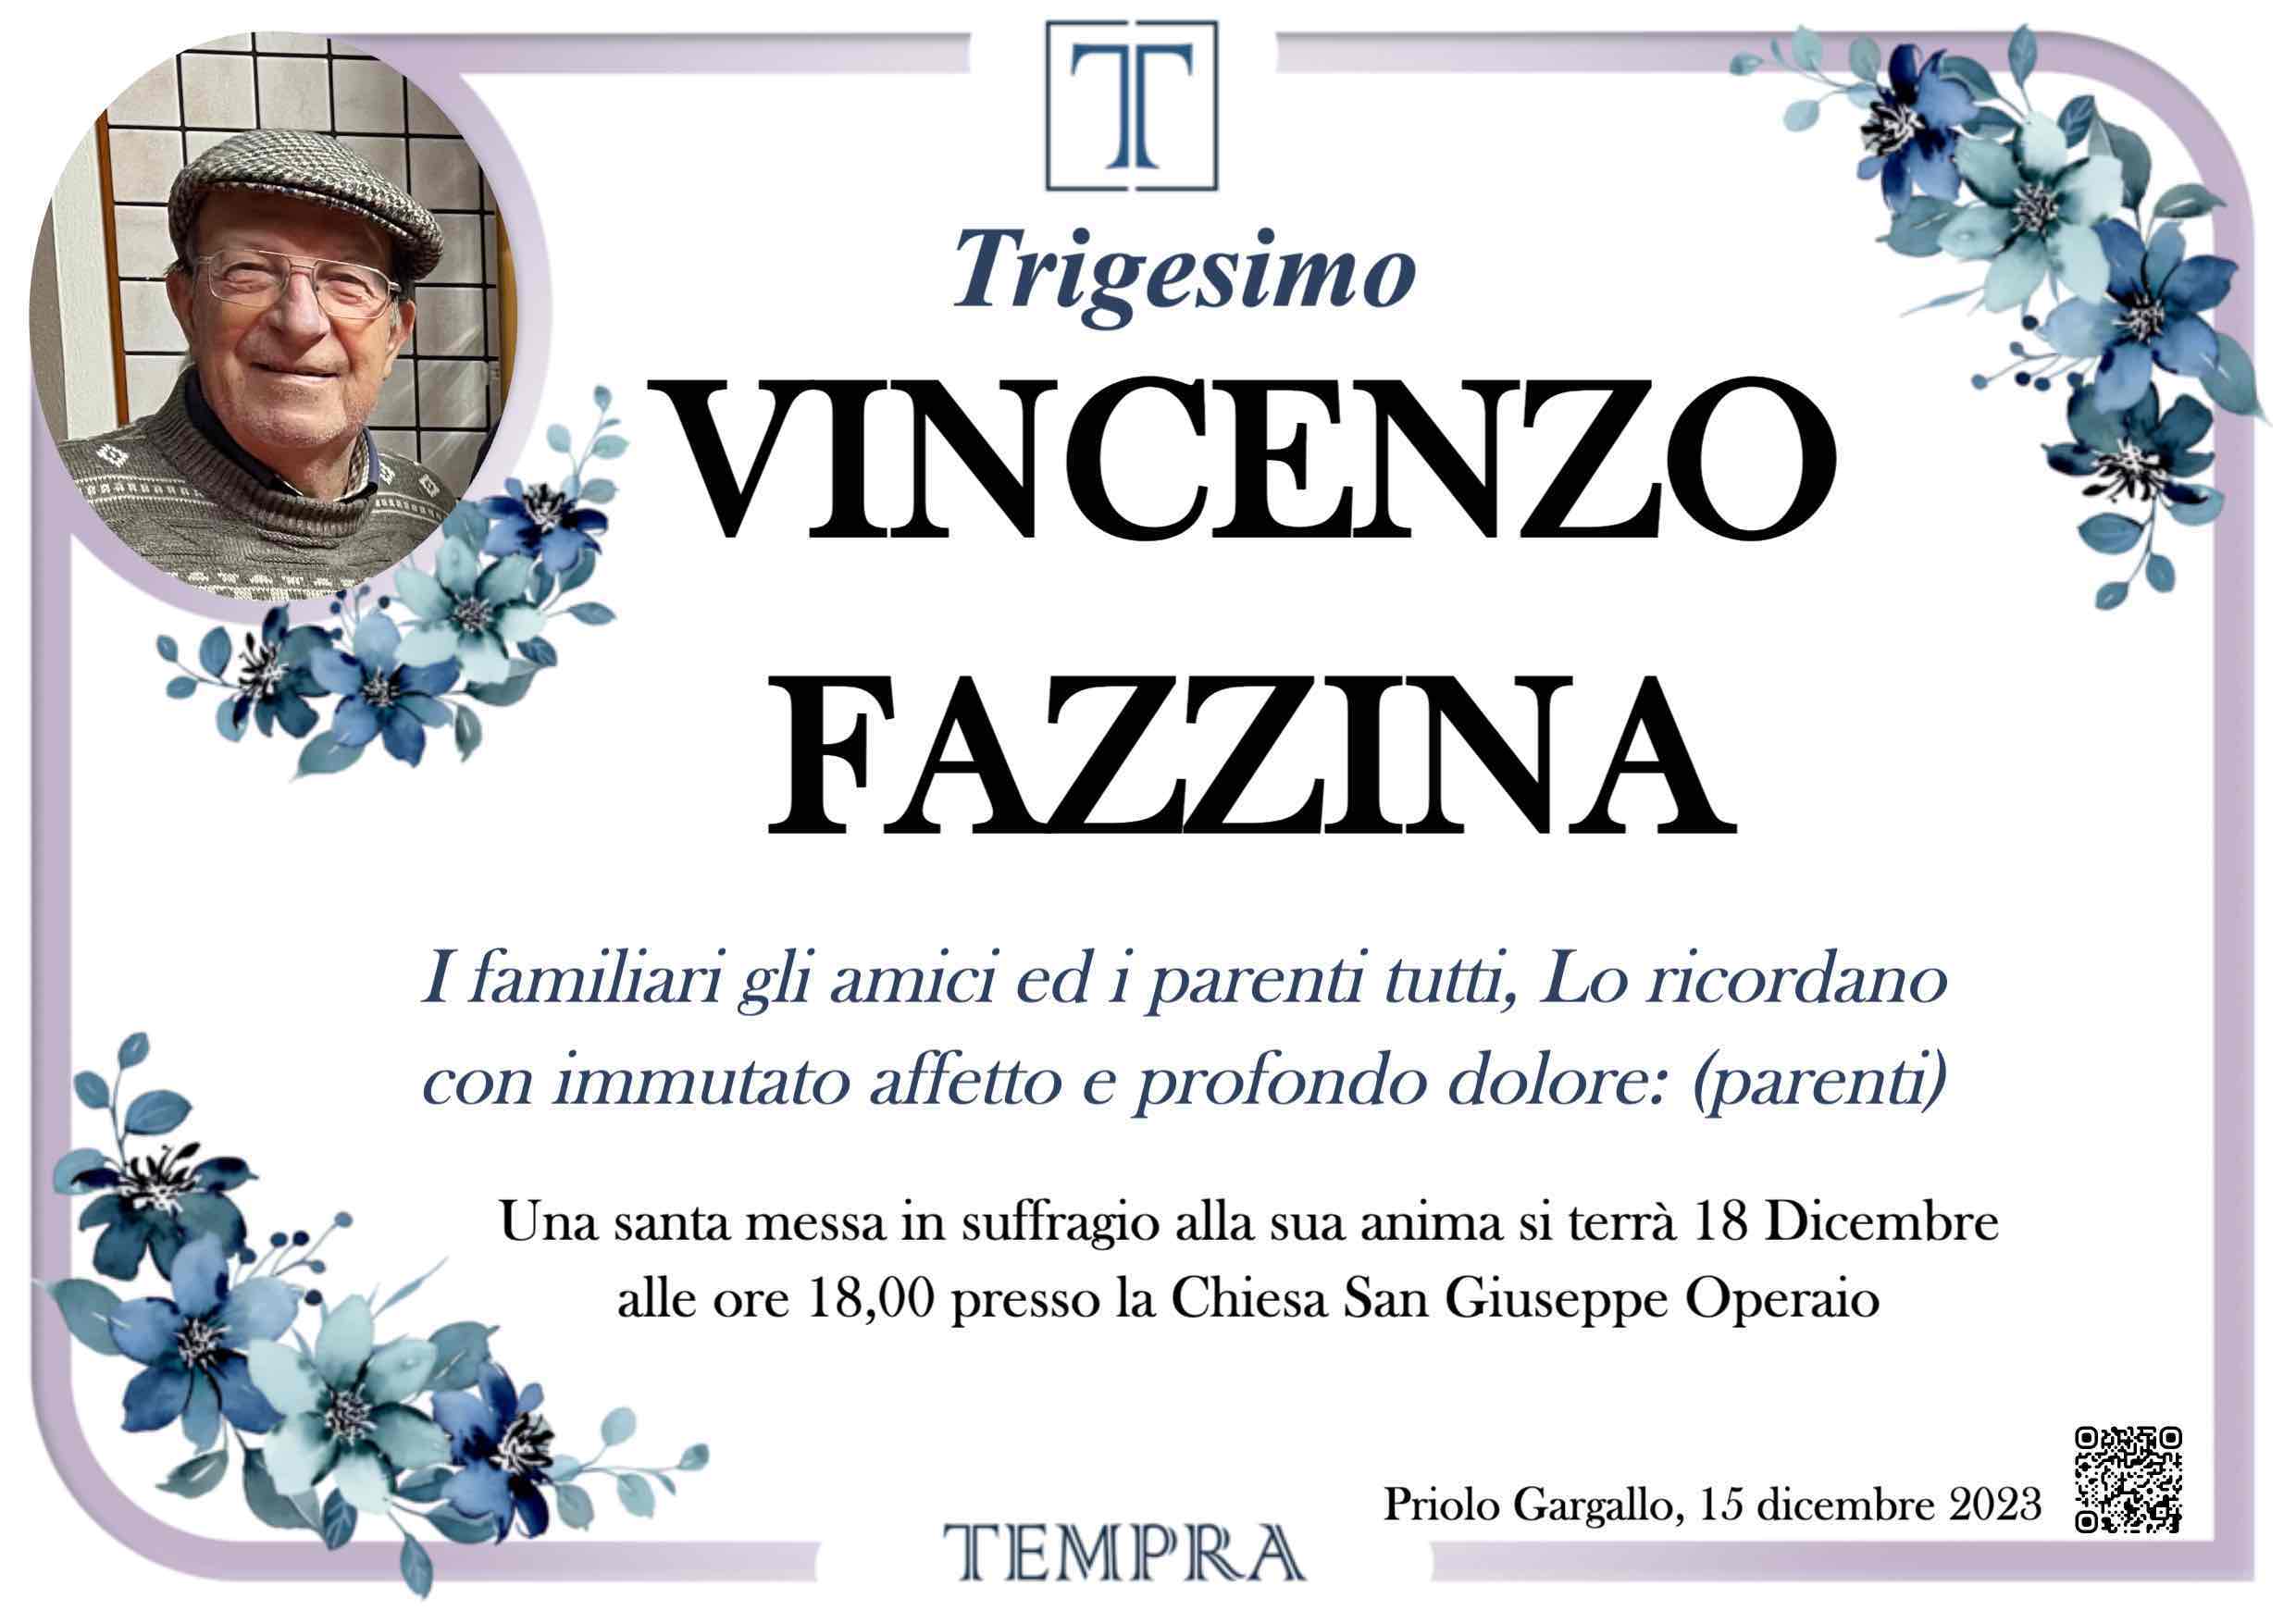 Vincenzo Fazzina